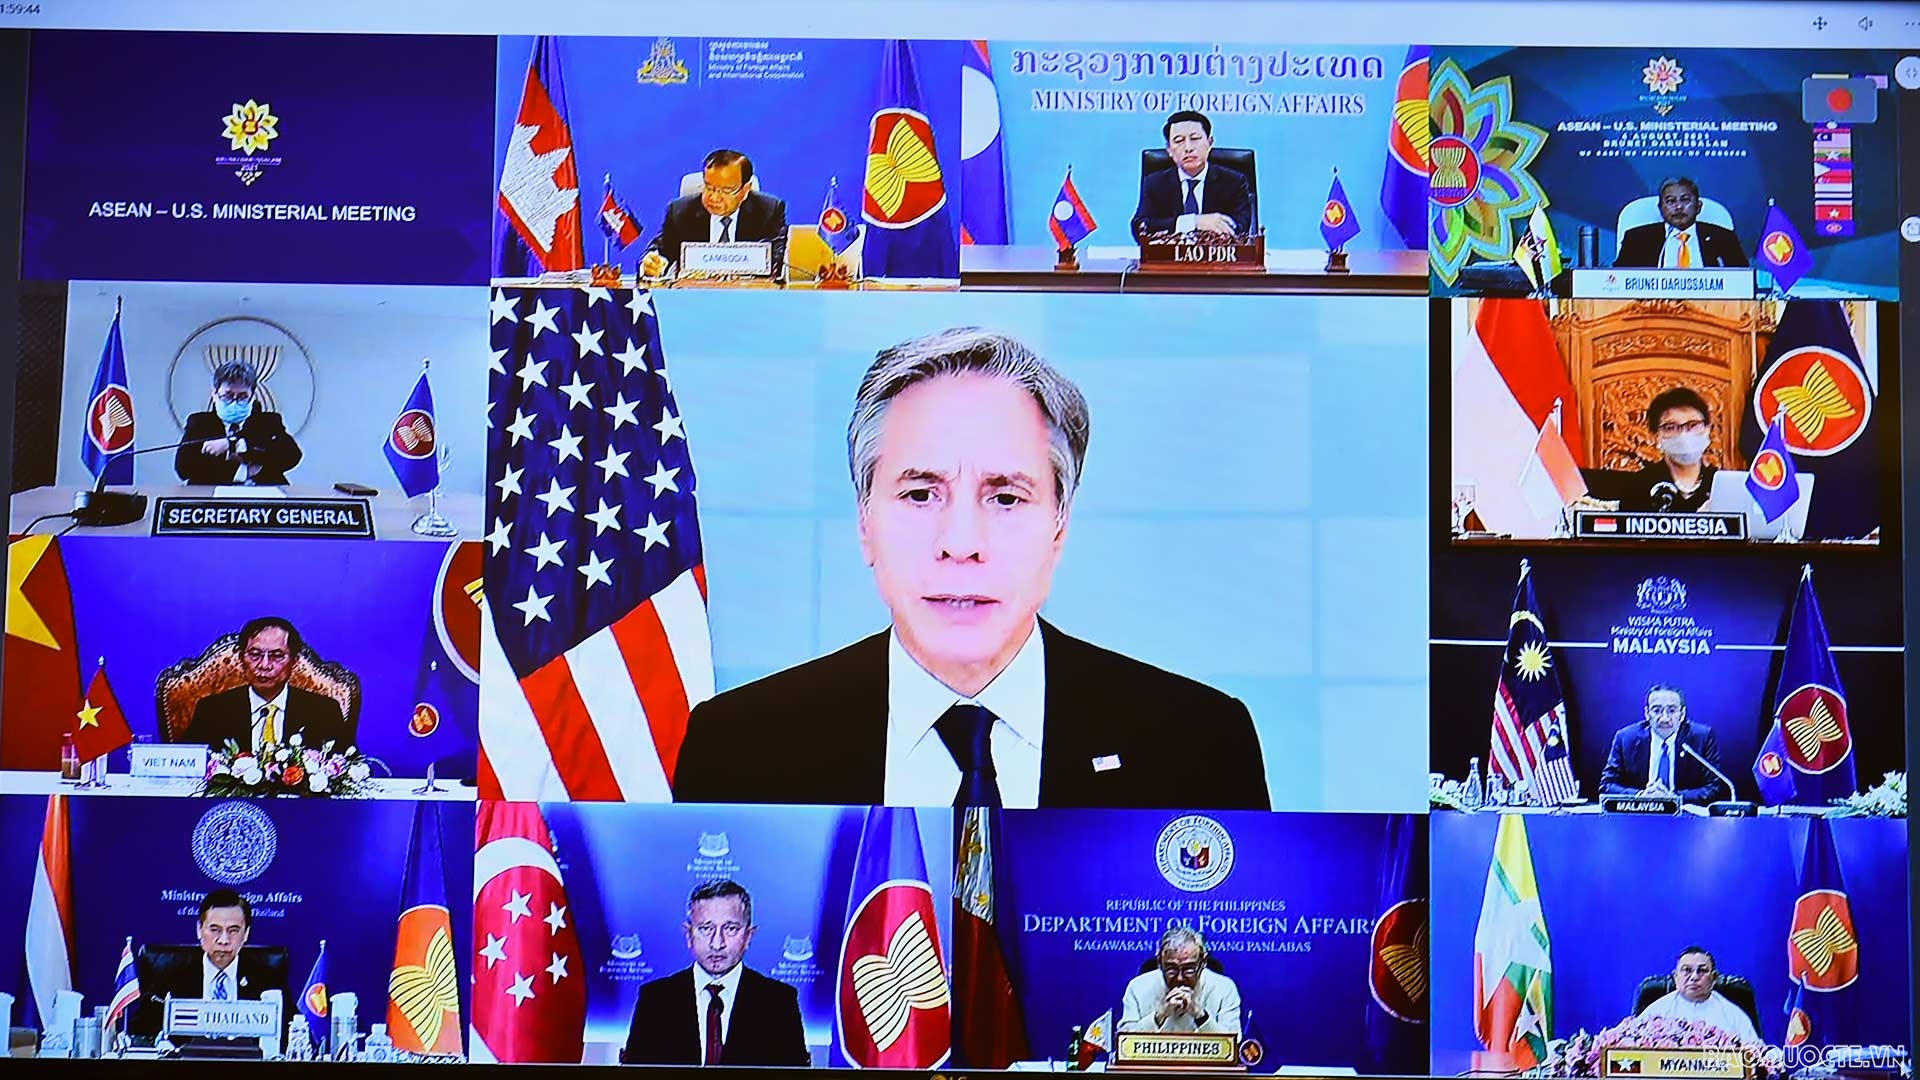 Hoa Kỳ ủng hộ lập trường nguyên tắc của ASEAN về vấn đề Biển Đông